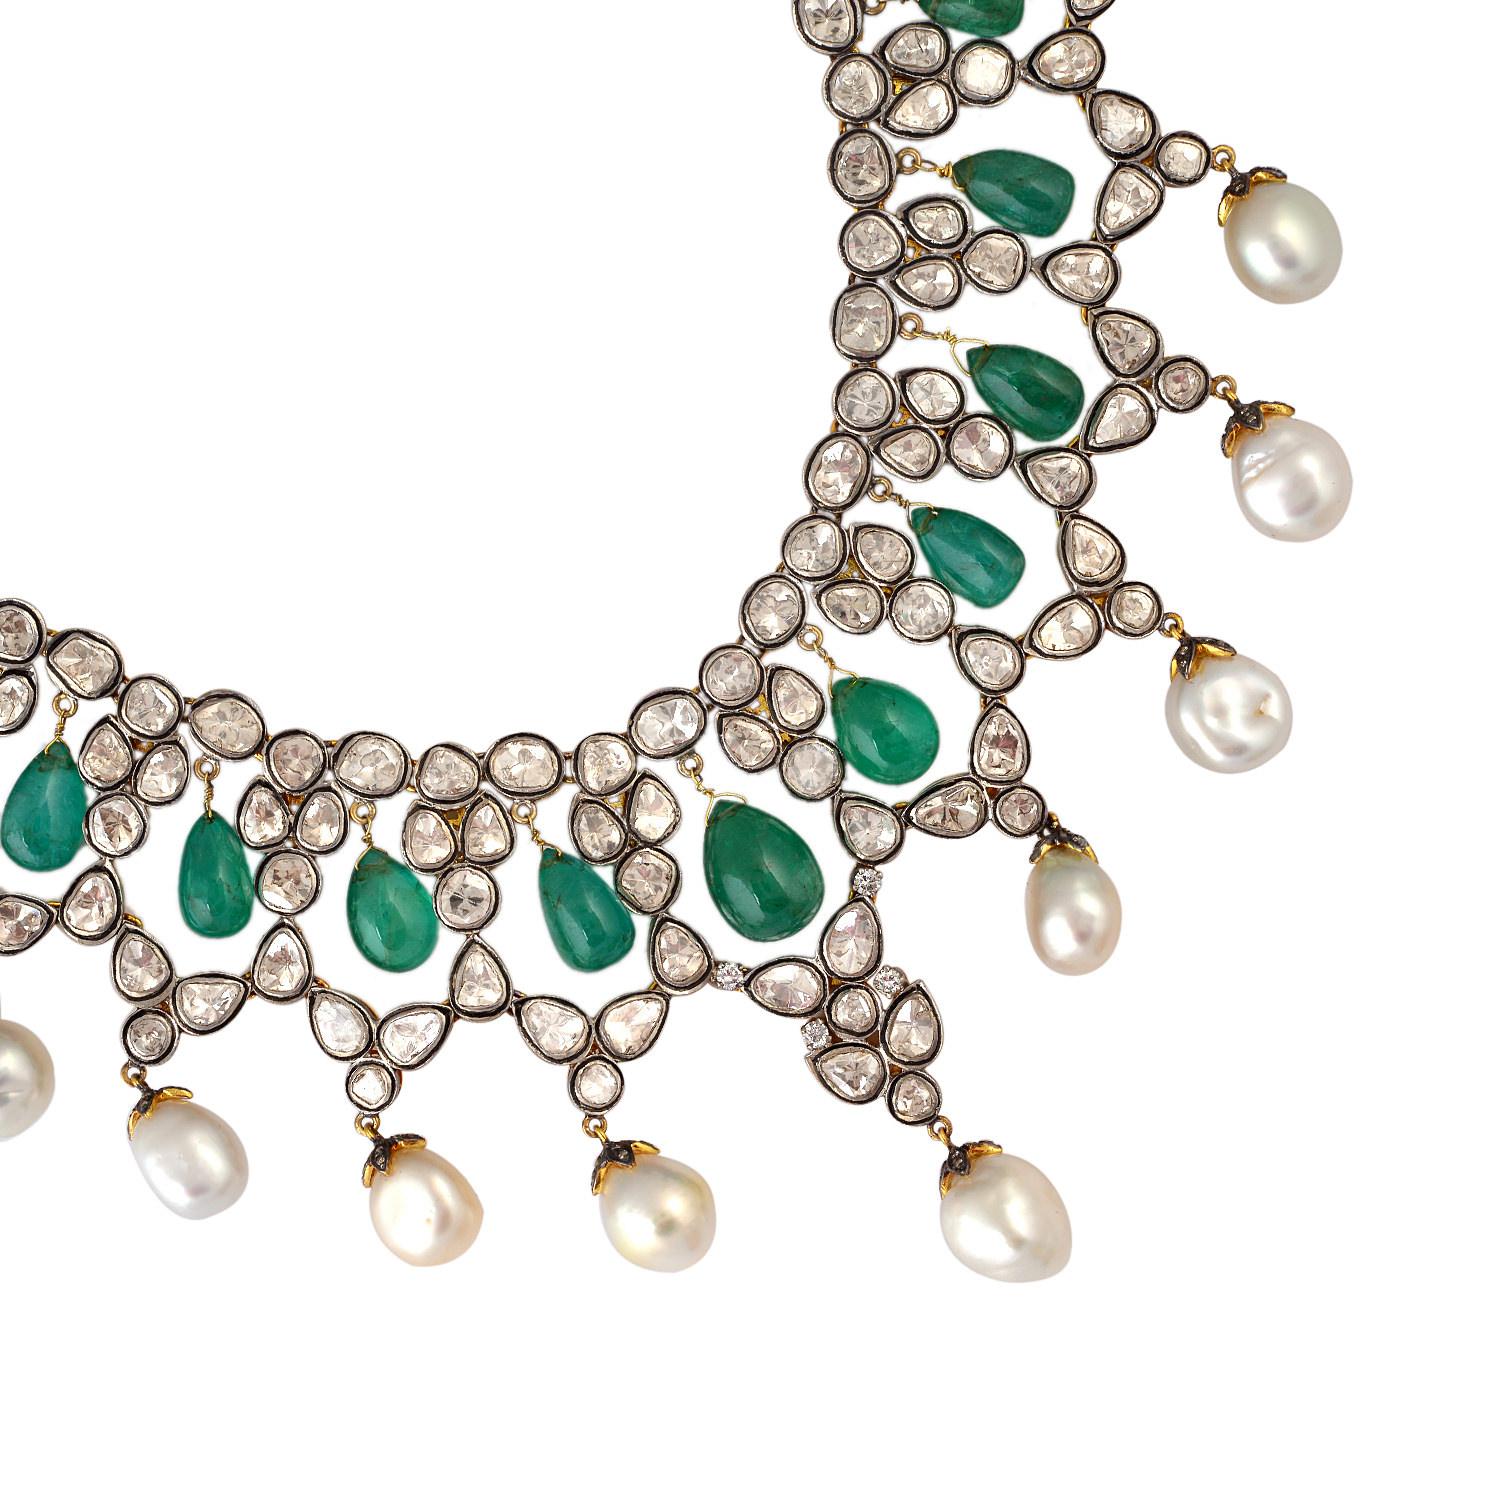 Die Maharaja Collection ist von der Moghul-Ära und dem indischen Erbe inspiriert.
Eine atemberaubende Halskette, handgefertigt aus 14K Gold und Sterlingsilber. Er ist mit 57,52 Karat Smaragd, 104,62 Karat Perle und 15,41 Karat Diamanten im